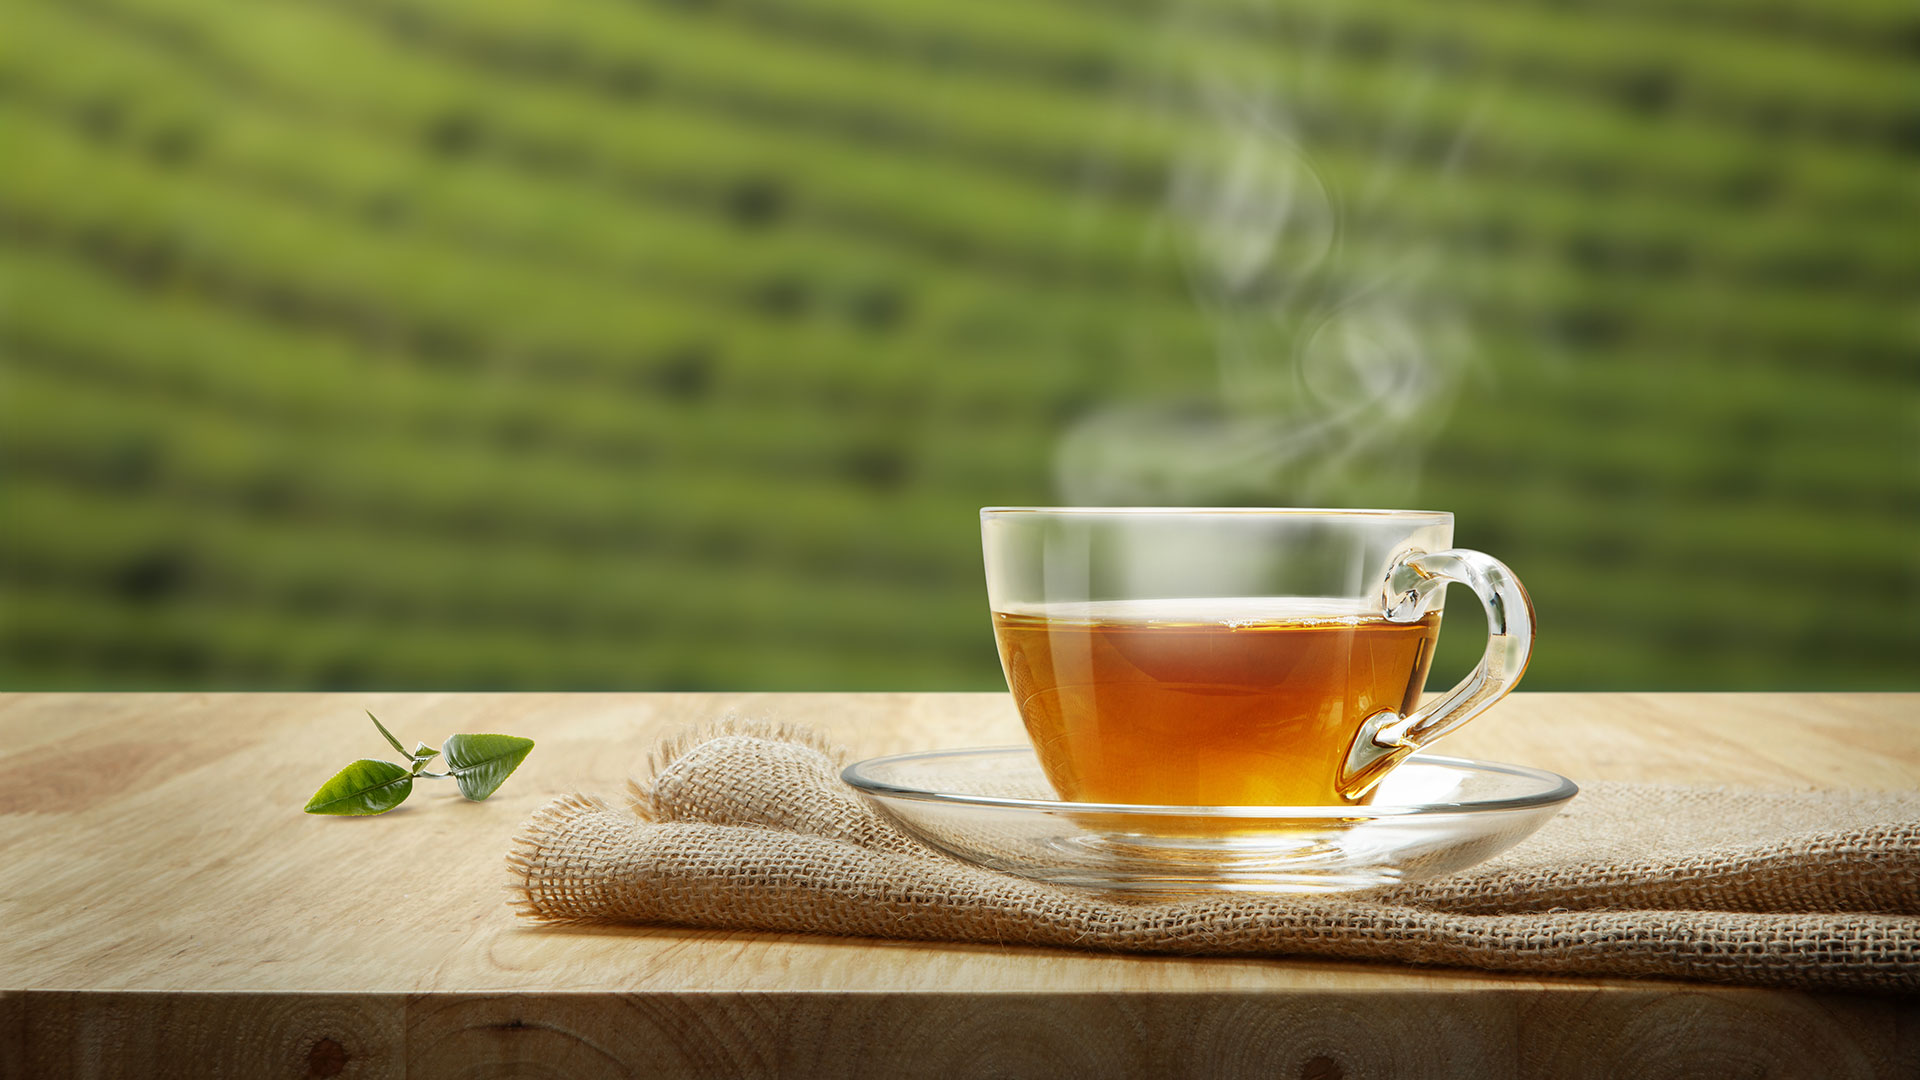 La mayoría de las plantas medicinales se beben en té o infusión (Shutterstock)